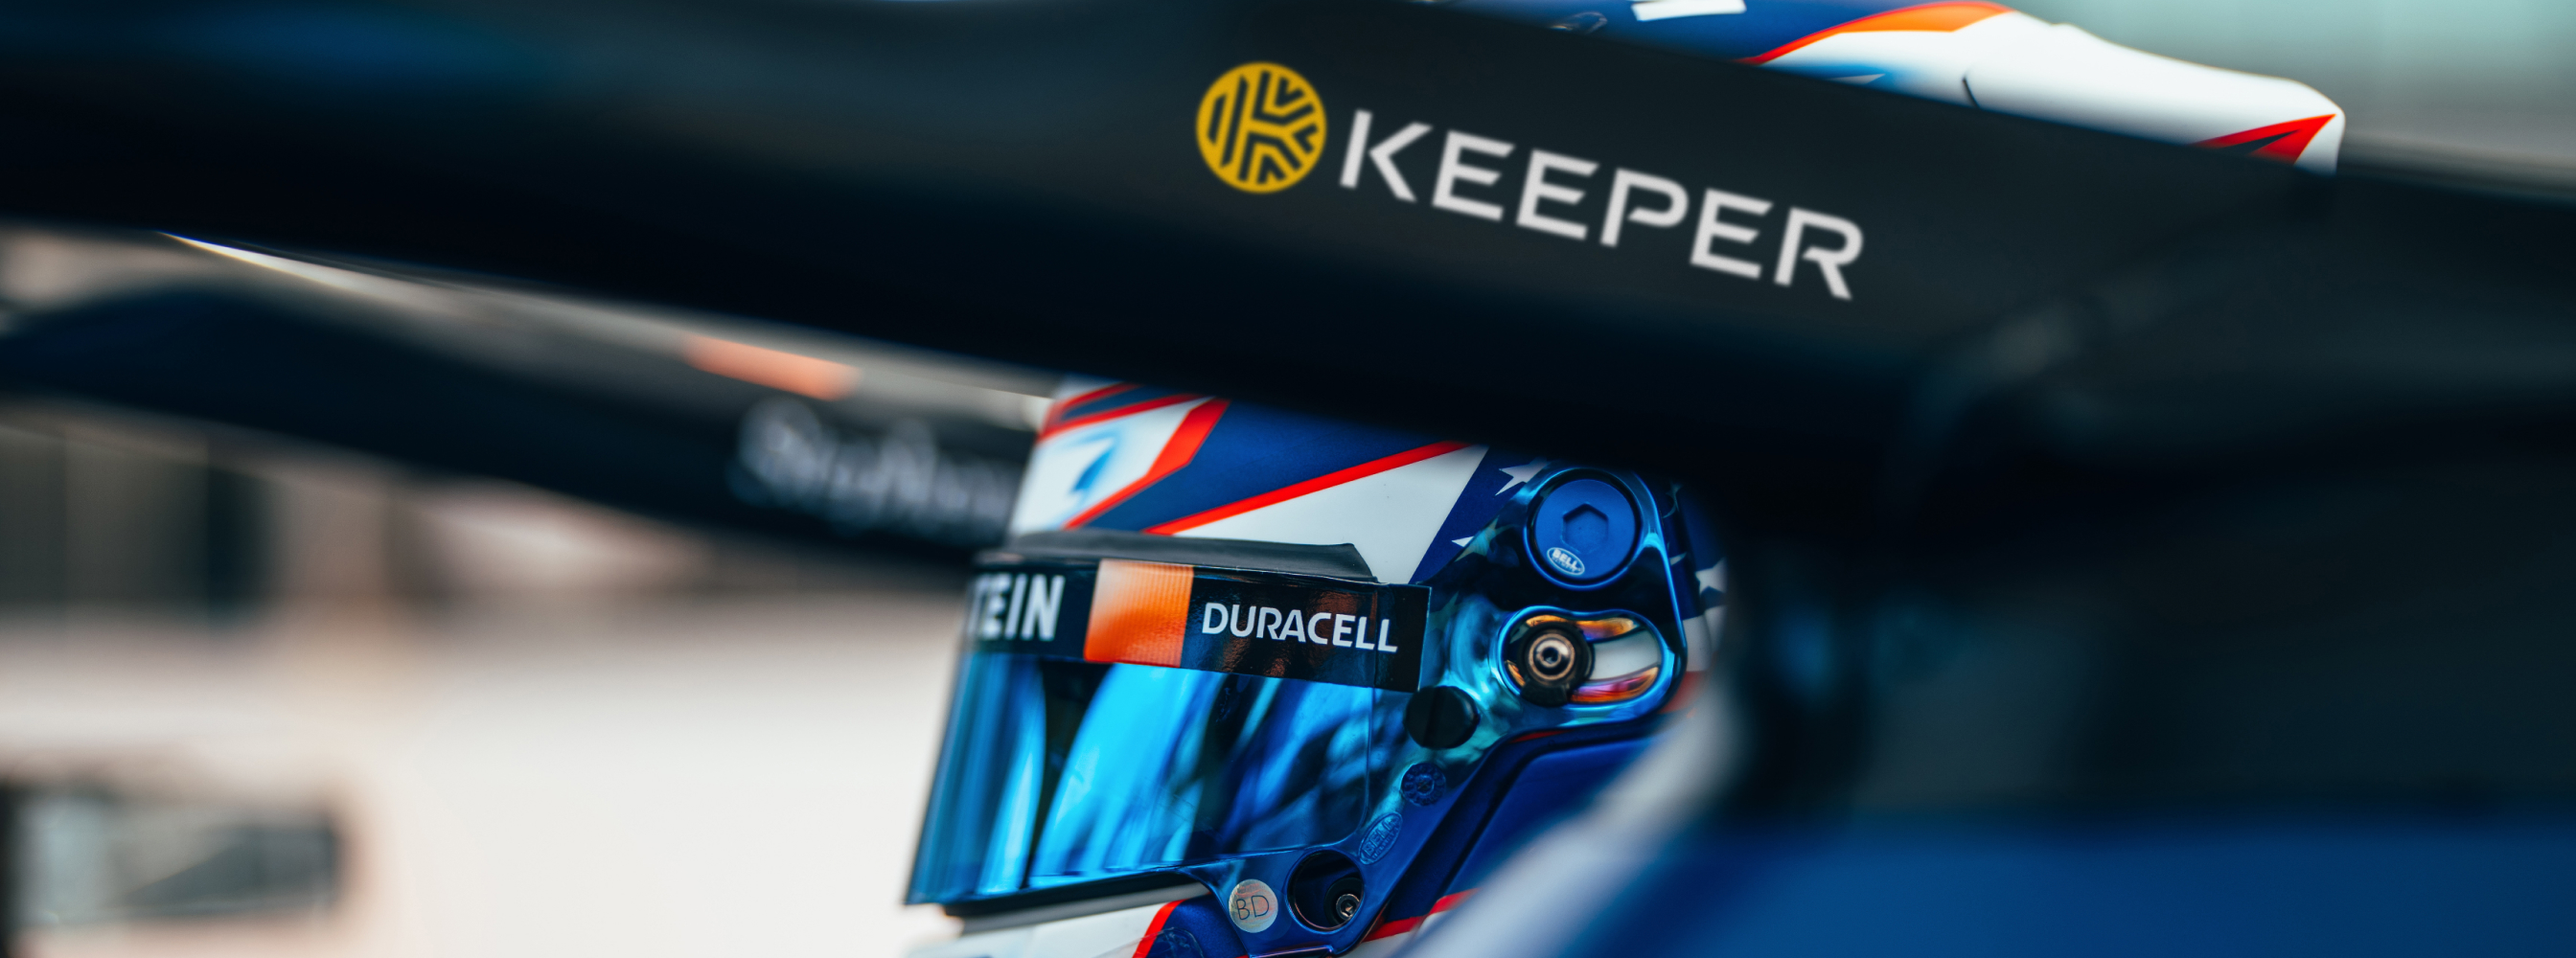 Keeper x Williams Racing - acelerando a inovação